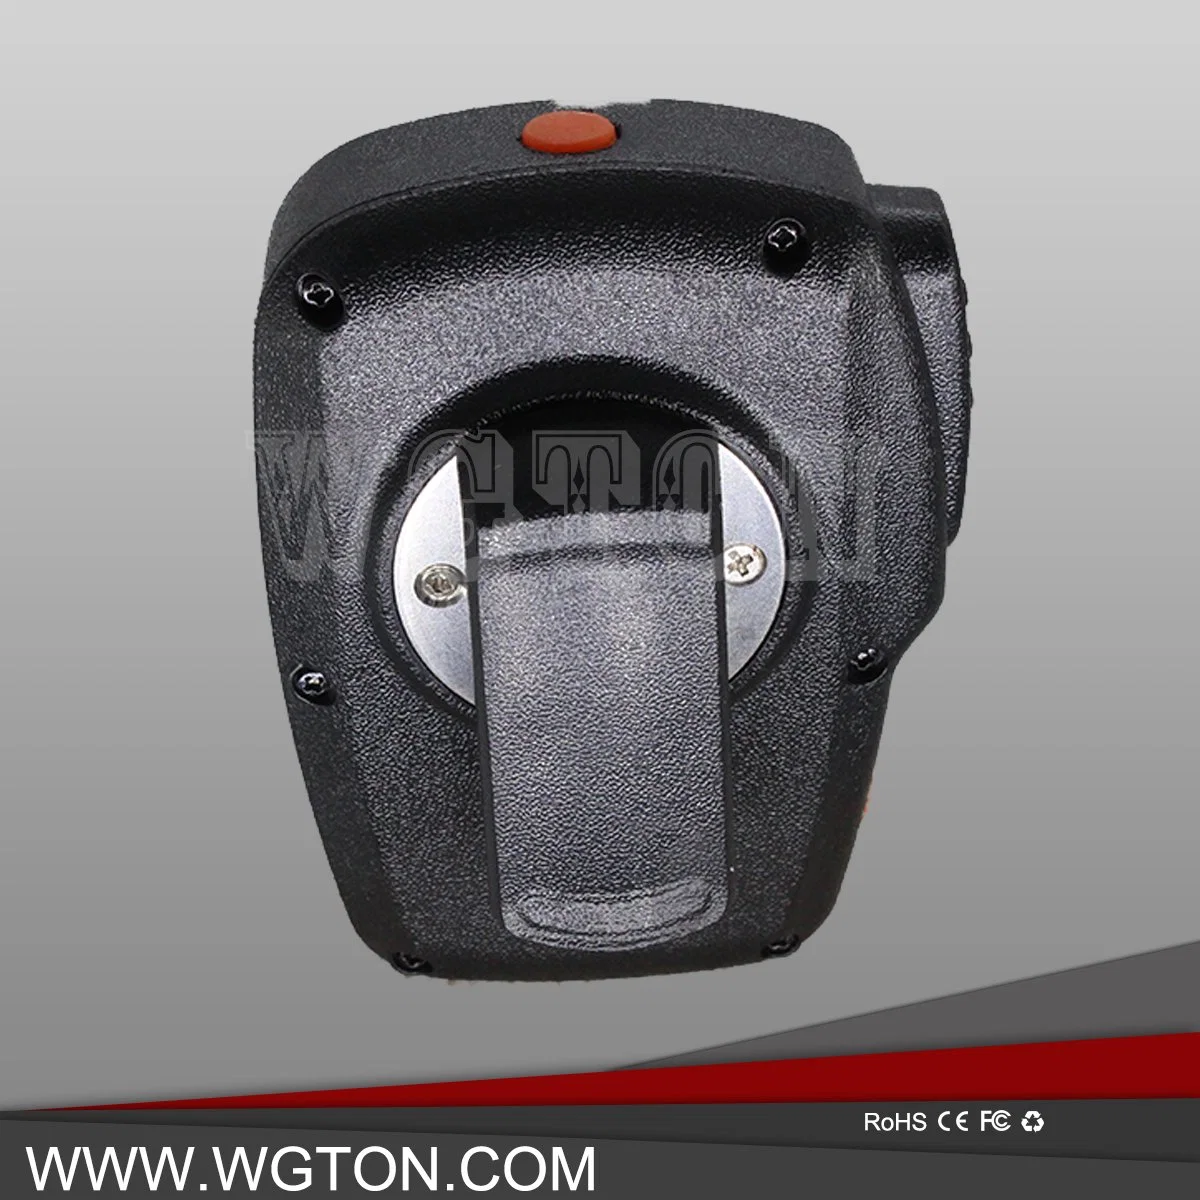 Wgton Bt150 Alto-falante sem fio Bluetooth para o fone de ouvido Micriphone 3G Smart Walkie Talkie Poc Rádio de Duas Vias S100 S200 etc